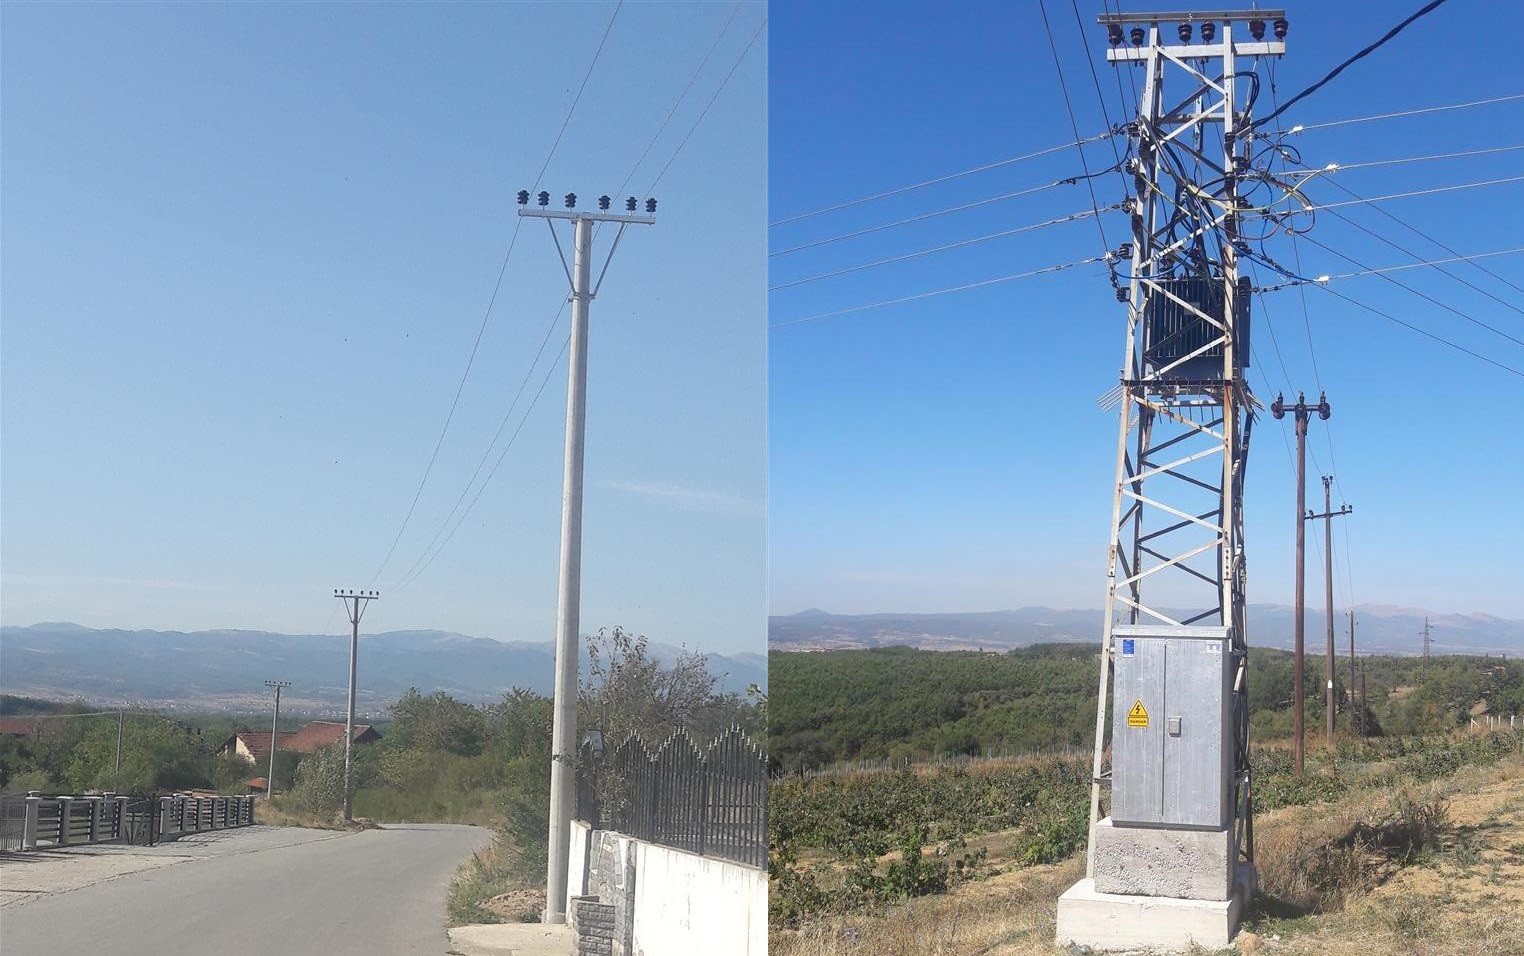 100 amvisëri të fshatit Dyz përfitojnë rrjet të ri elektrik